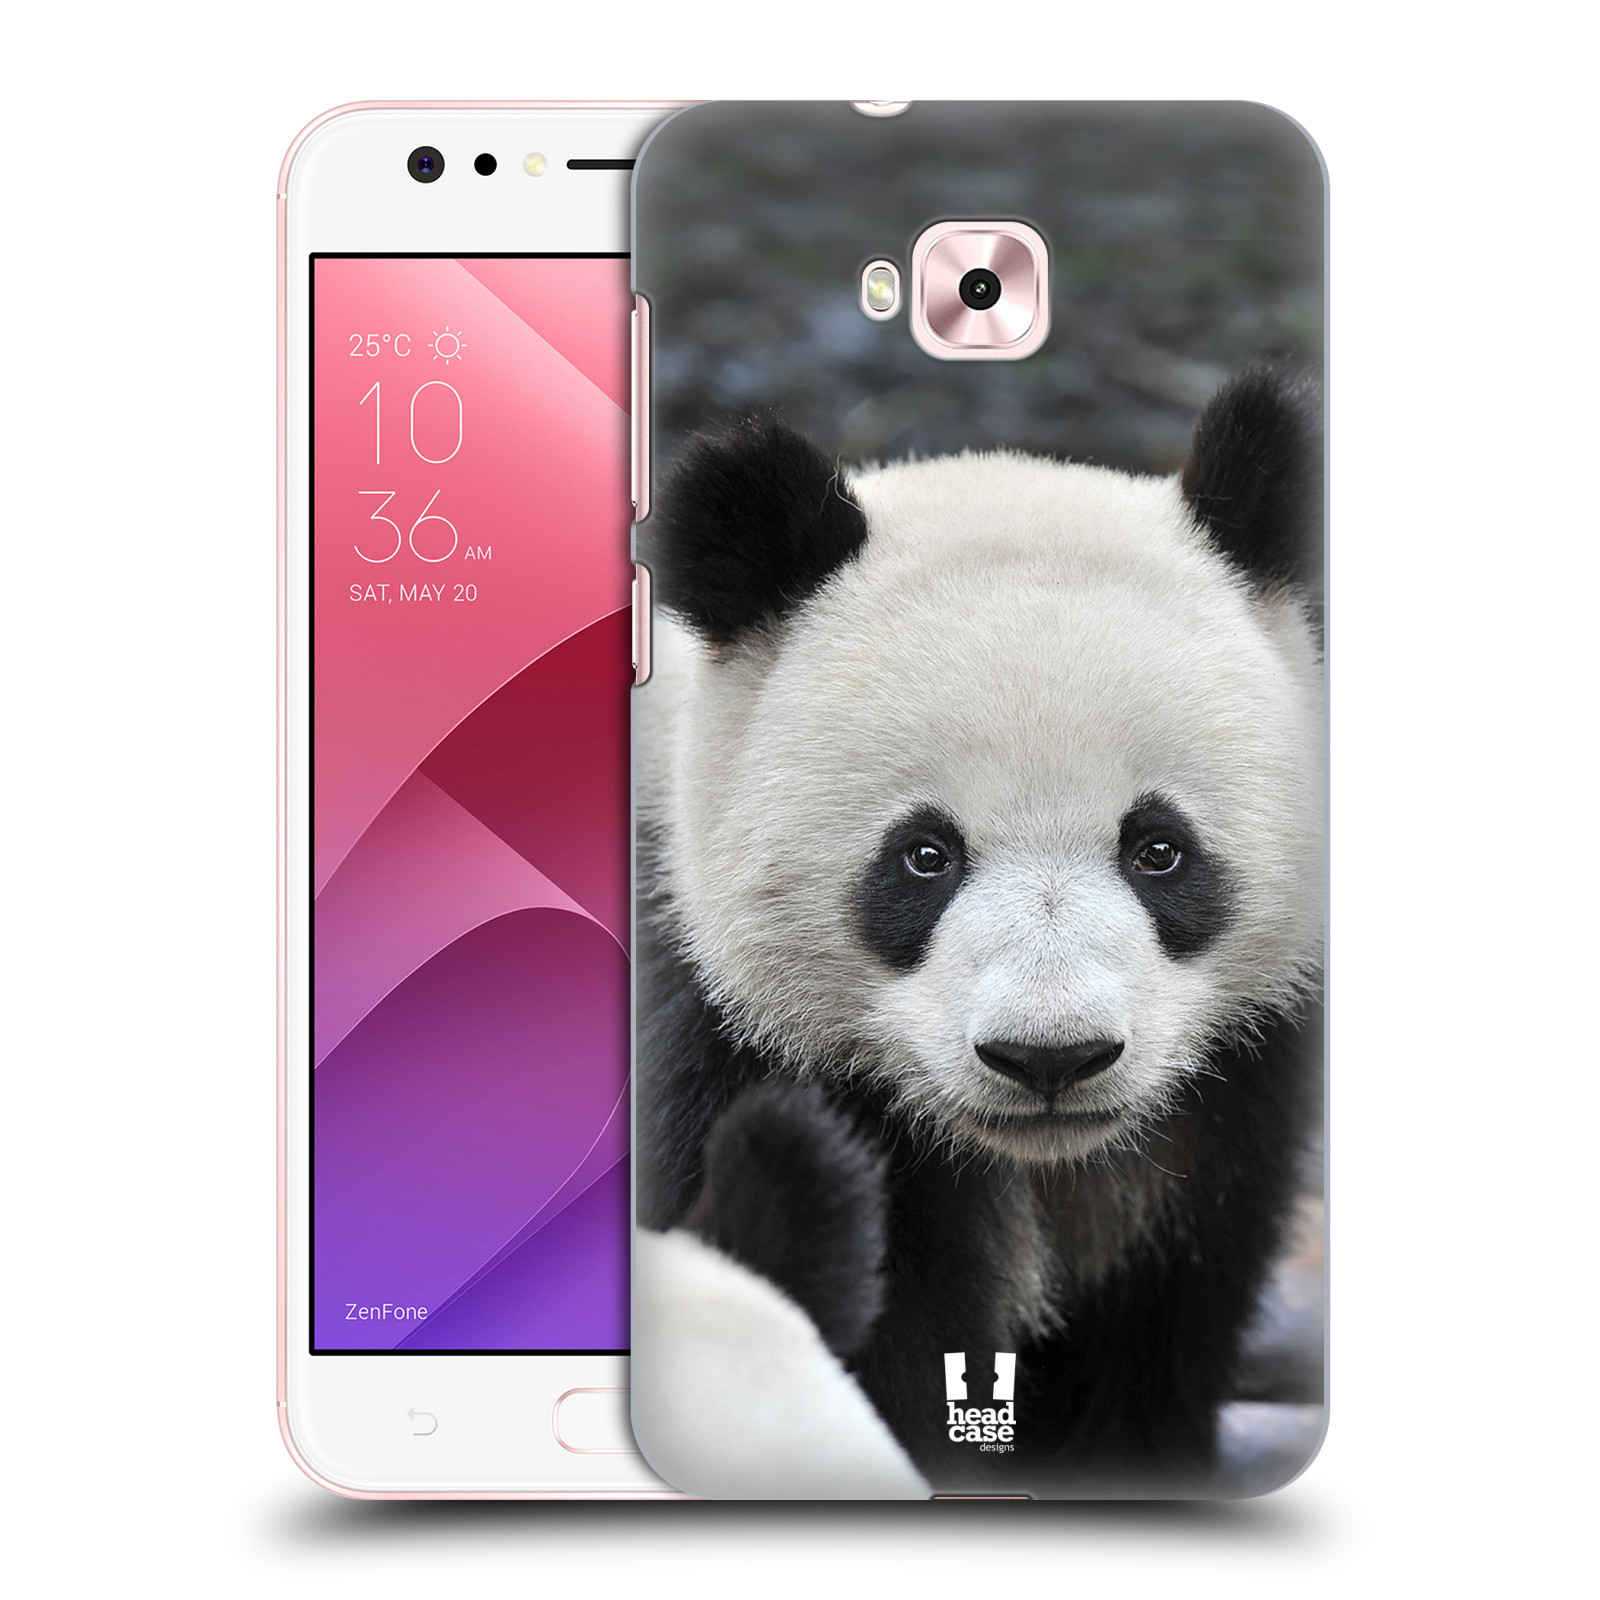 Zadní obal pro mobil Asus Zenfone 4 Selfie ZD553KL - HEAD CASE - Svět zvířat medvěd panda